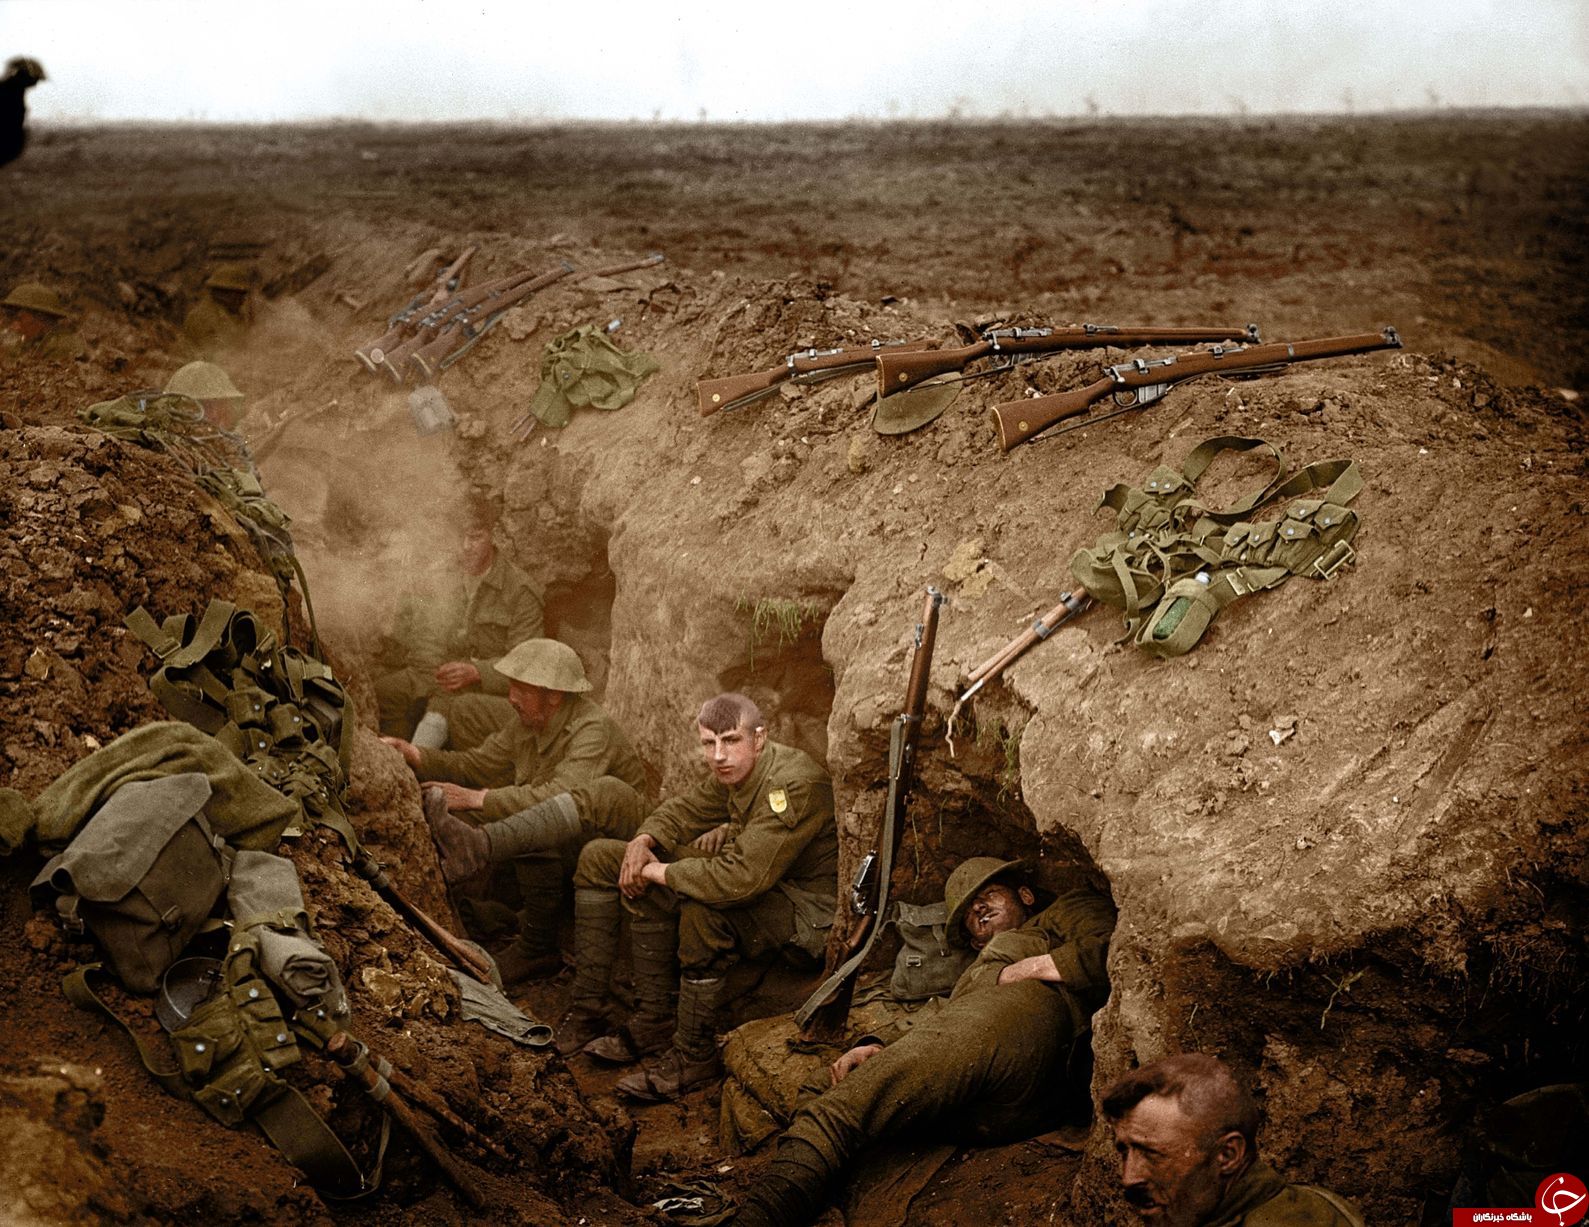 اخبار,سفری به اعماق تاریخ, تصاویر رنگی کمتر دیده شده از جنگ جهانی اول